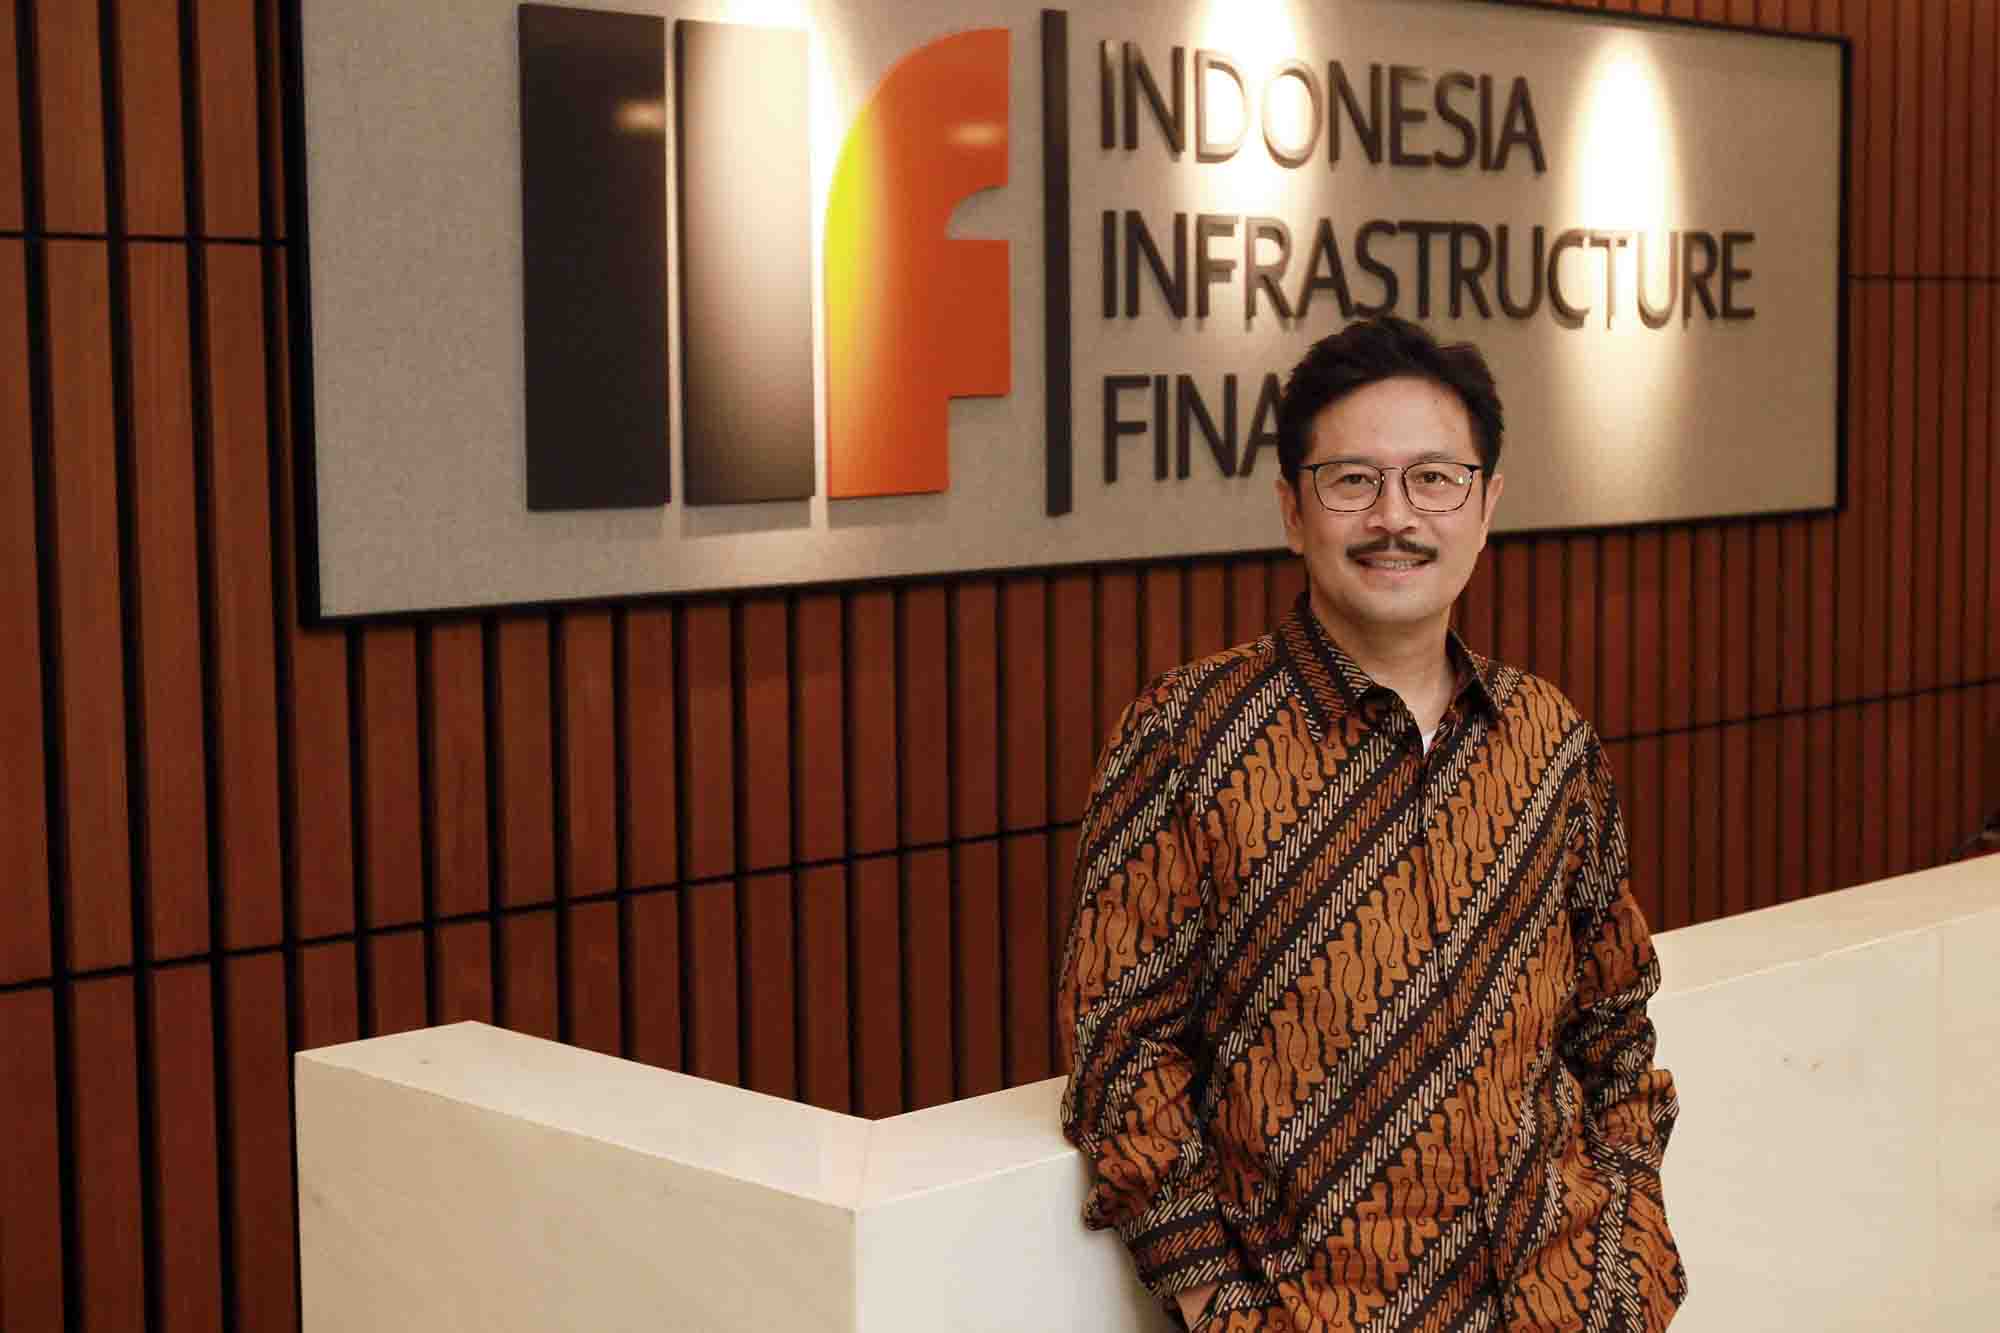 Indonesia Infrastructure Finance (IIF) Mengedukasi Pentingnya Faktor Sosial dan Lingkungan